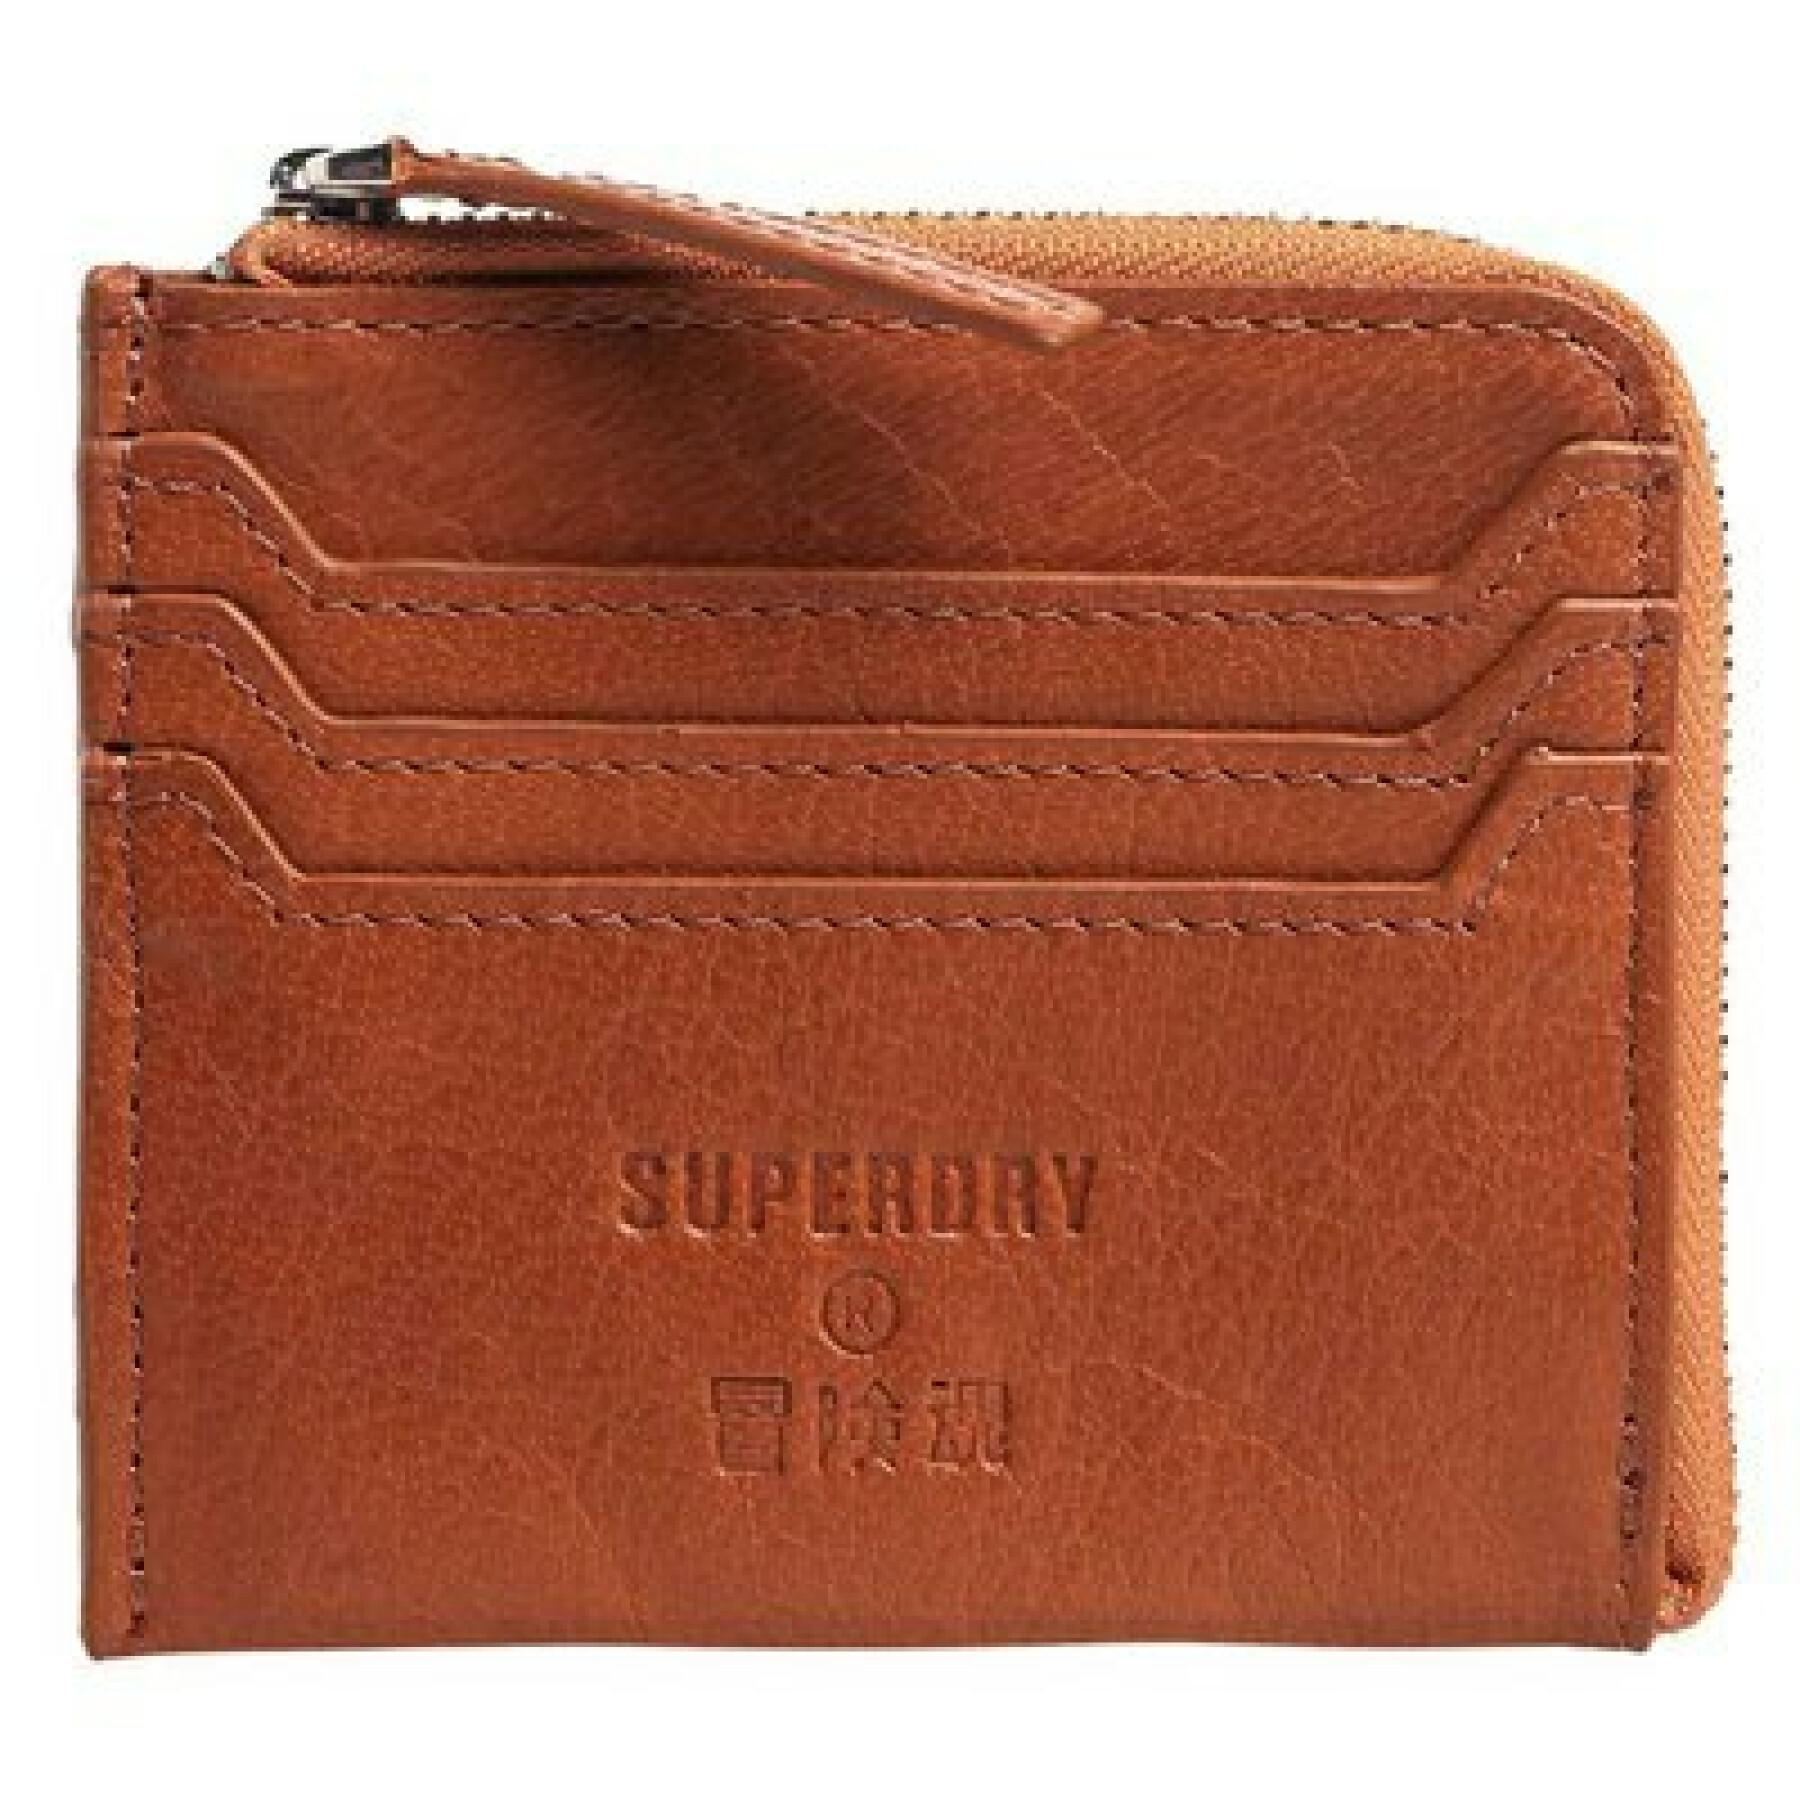 Damen Portemonnaie aus Leder mit Reißverschluss Superdry